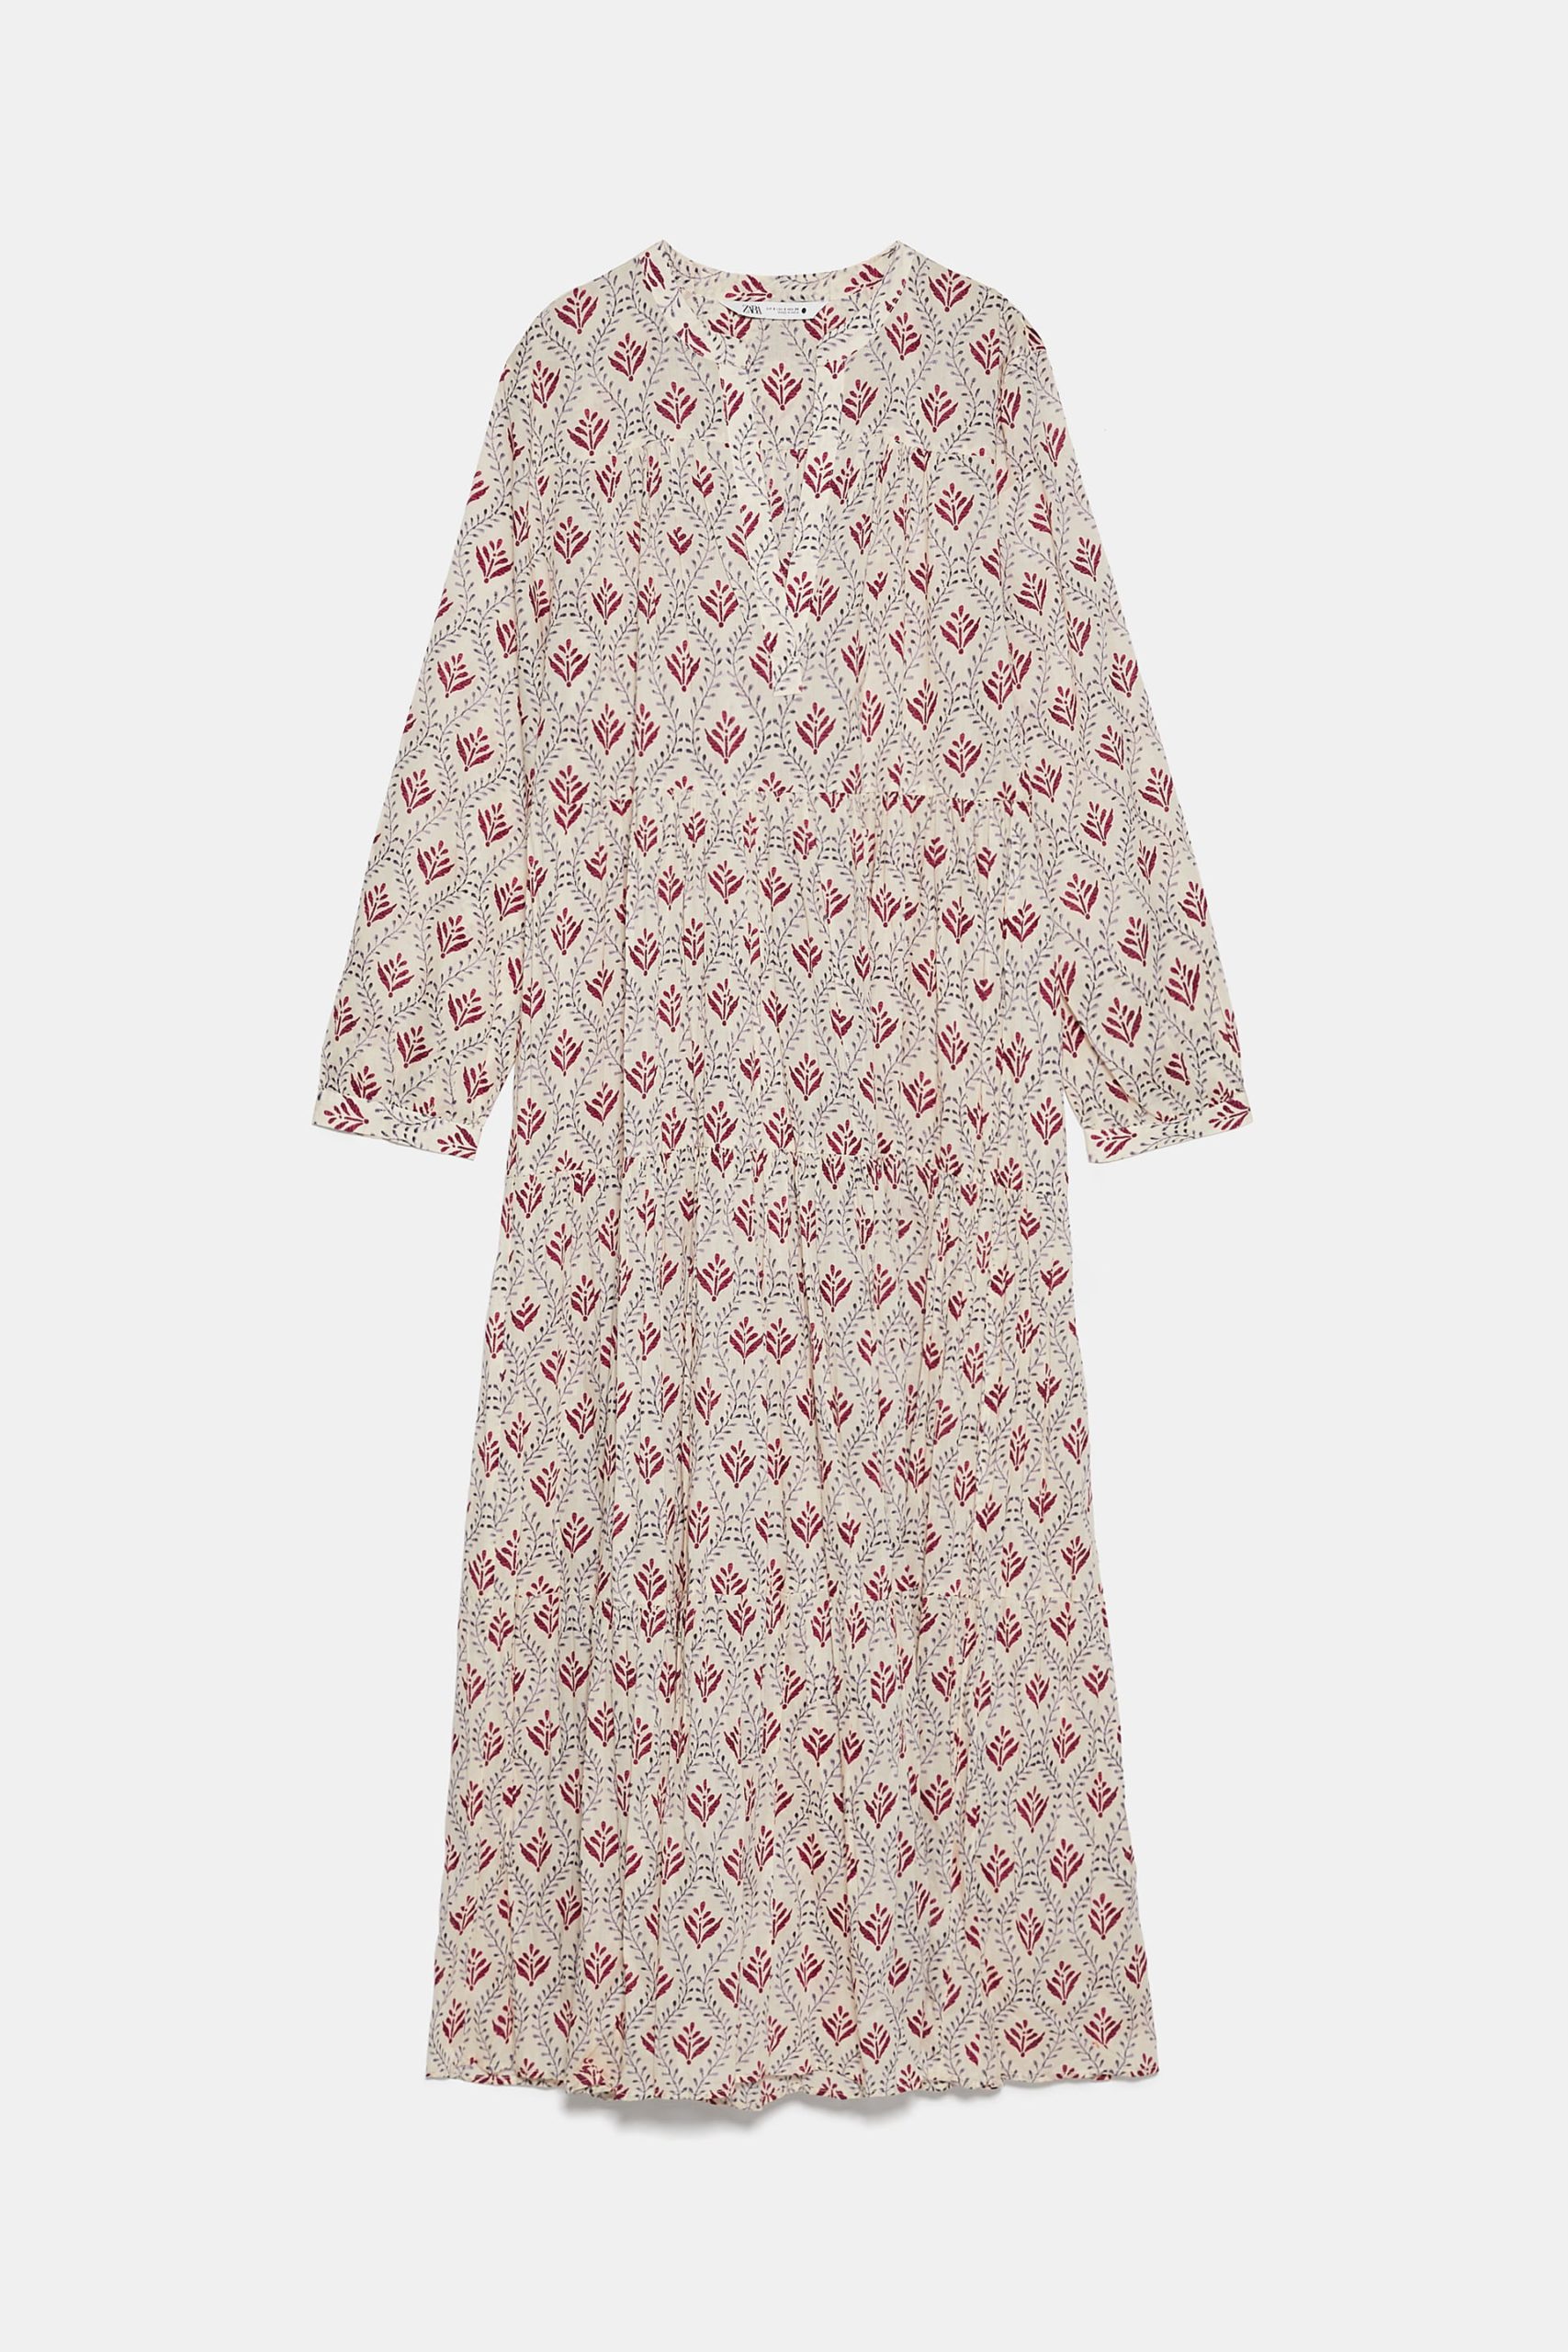 Zara Printed Flounce Dress